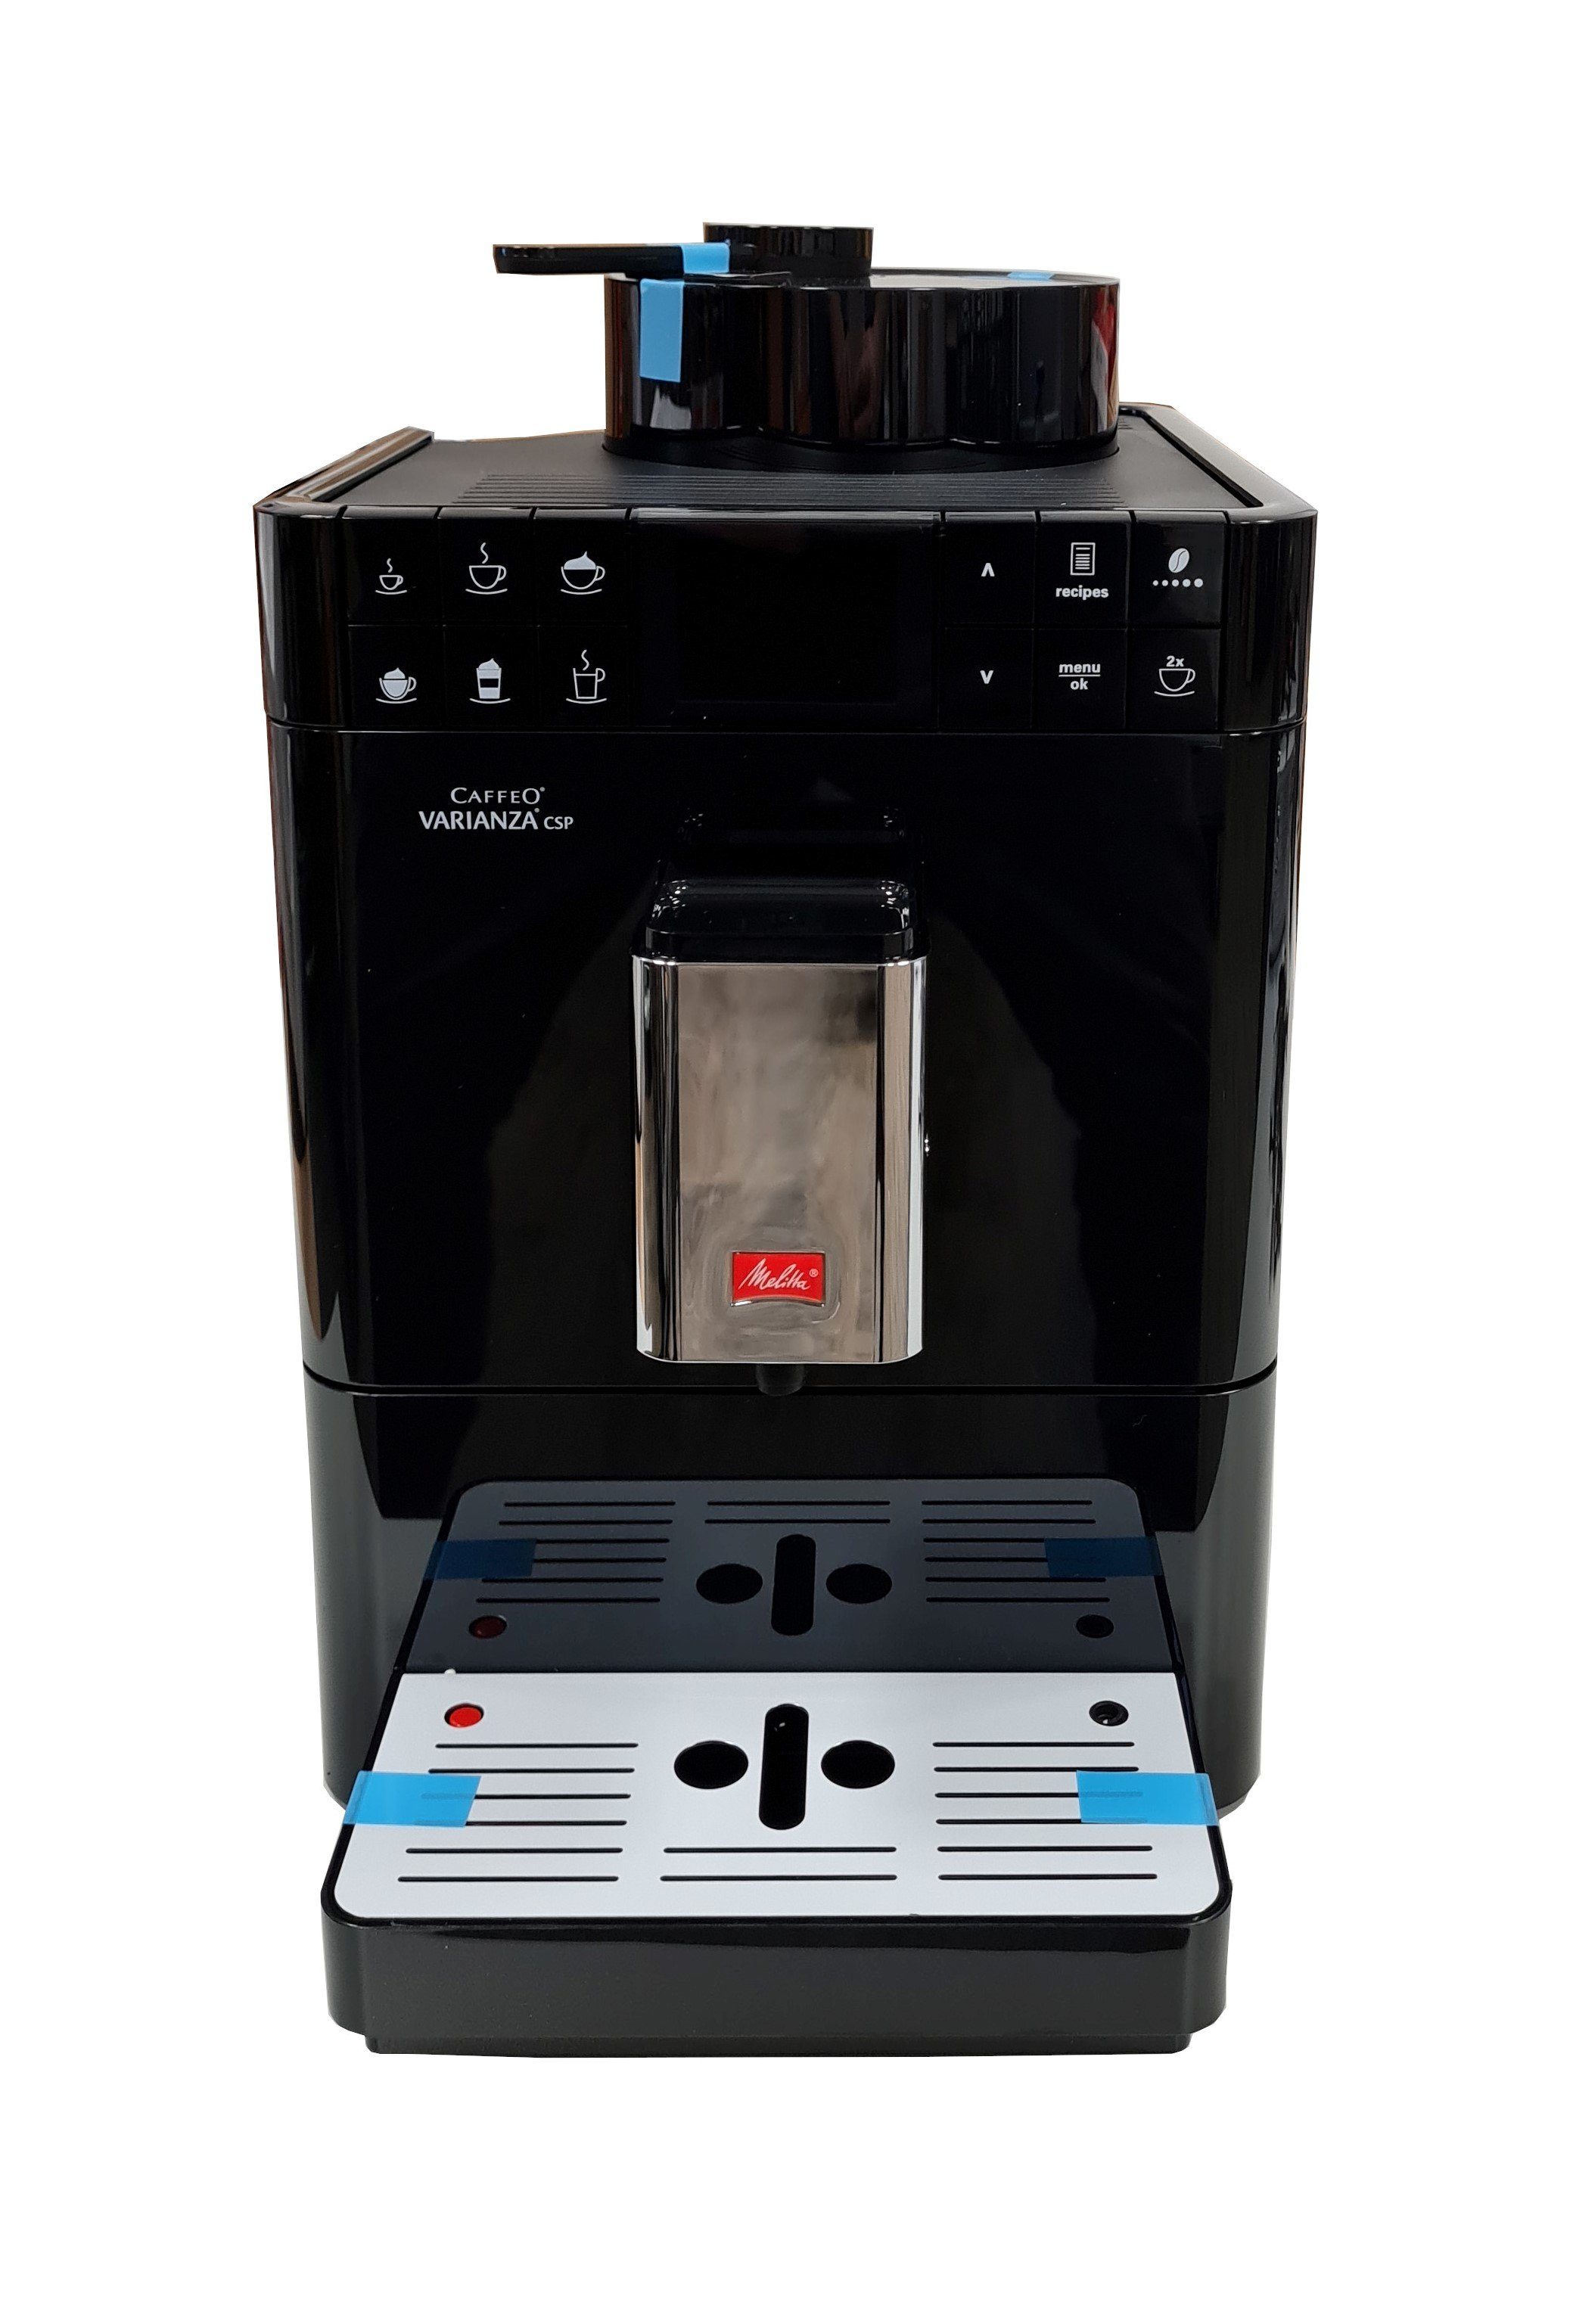 Melitta Kaffeevollautomat Melitta Caffeo Varianza CSP F570-102 Kaffeevollaut